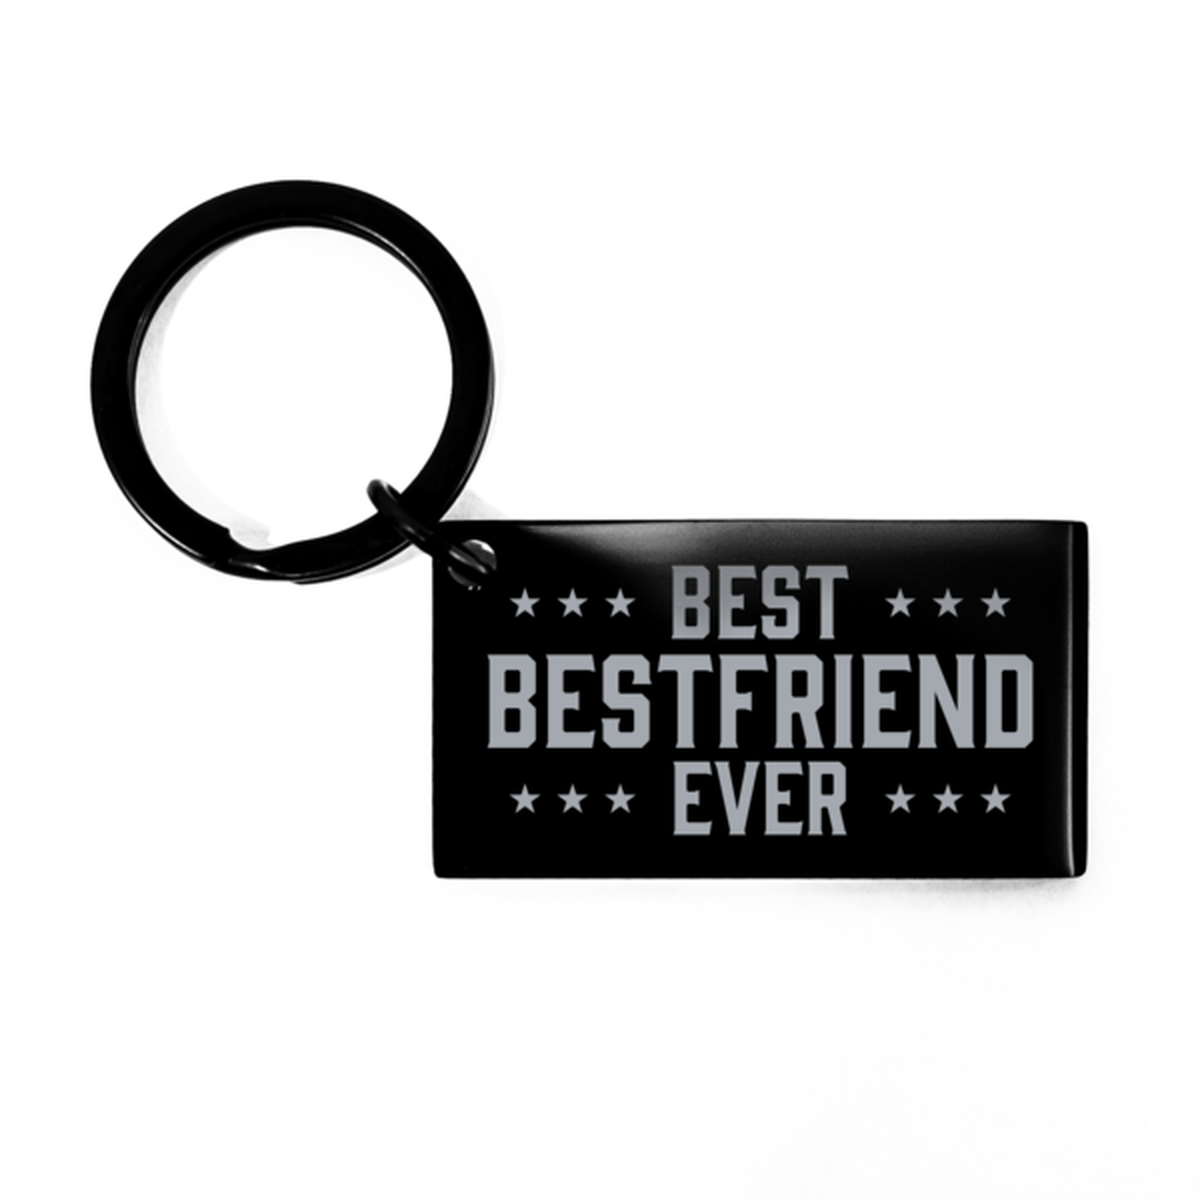 Best Bestfriend Ever Bestfriend Gifts, Funny Black Keychain For Bestfriend, Birthday Engraved Keyring Presents For Men Women